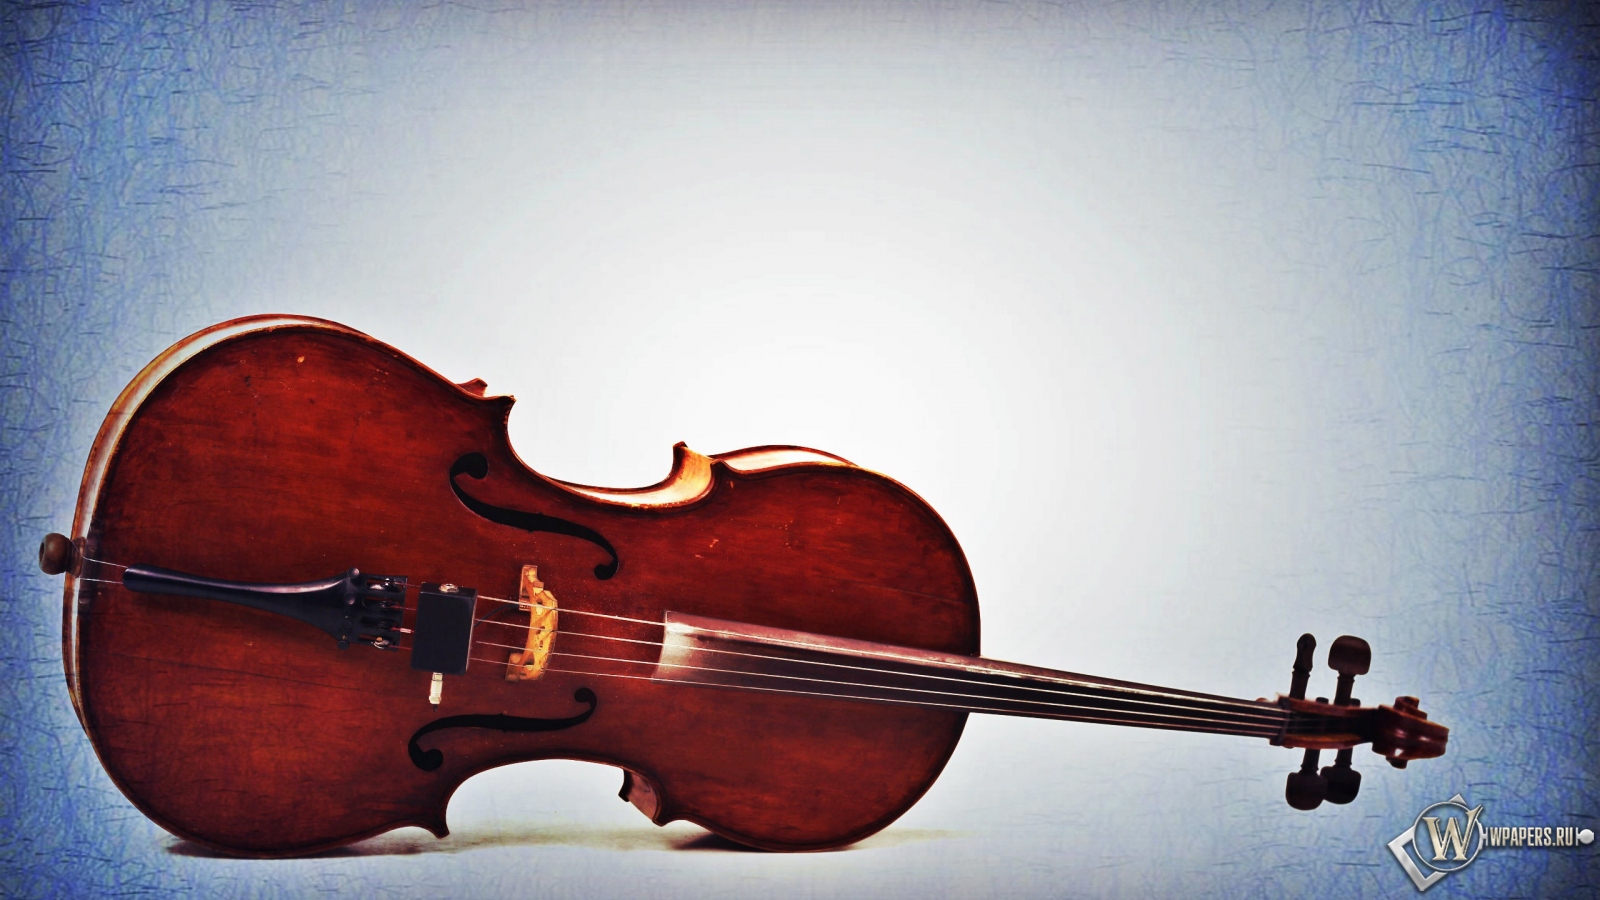 Старая виолончель  1600x900